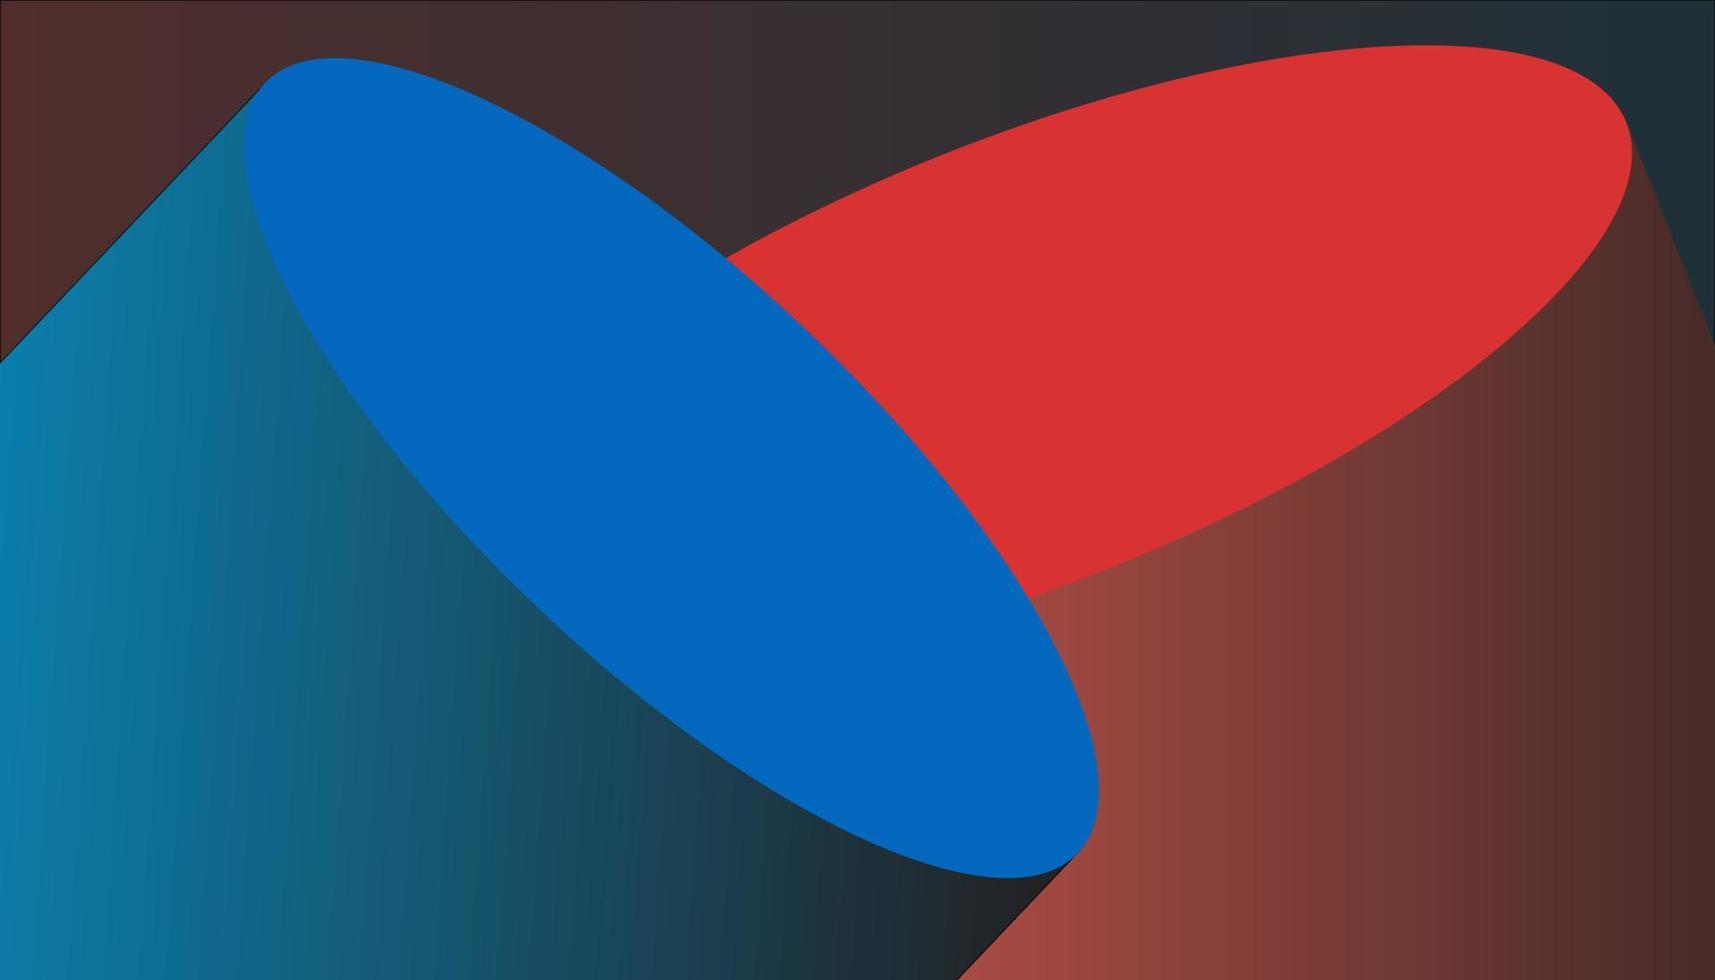 Vektor-Hintergrund abstrakt 3d zwei Zylinder rot blau Abbildung vektor